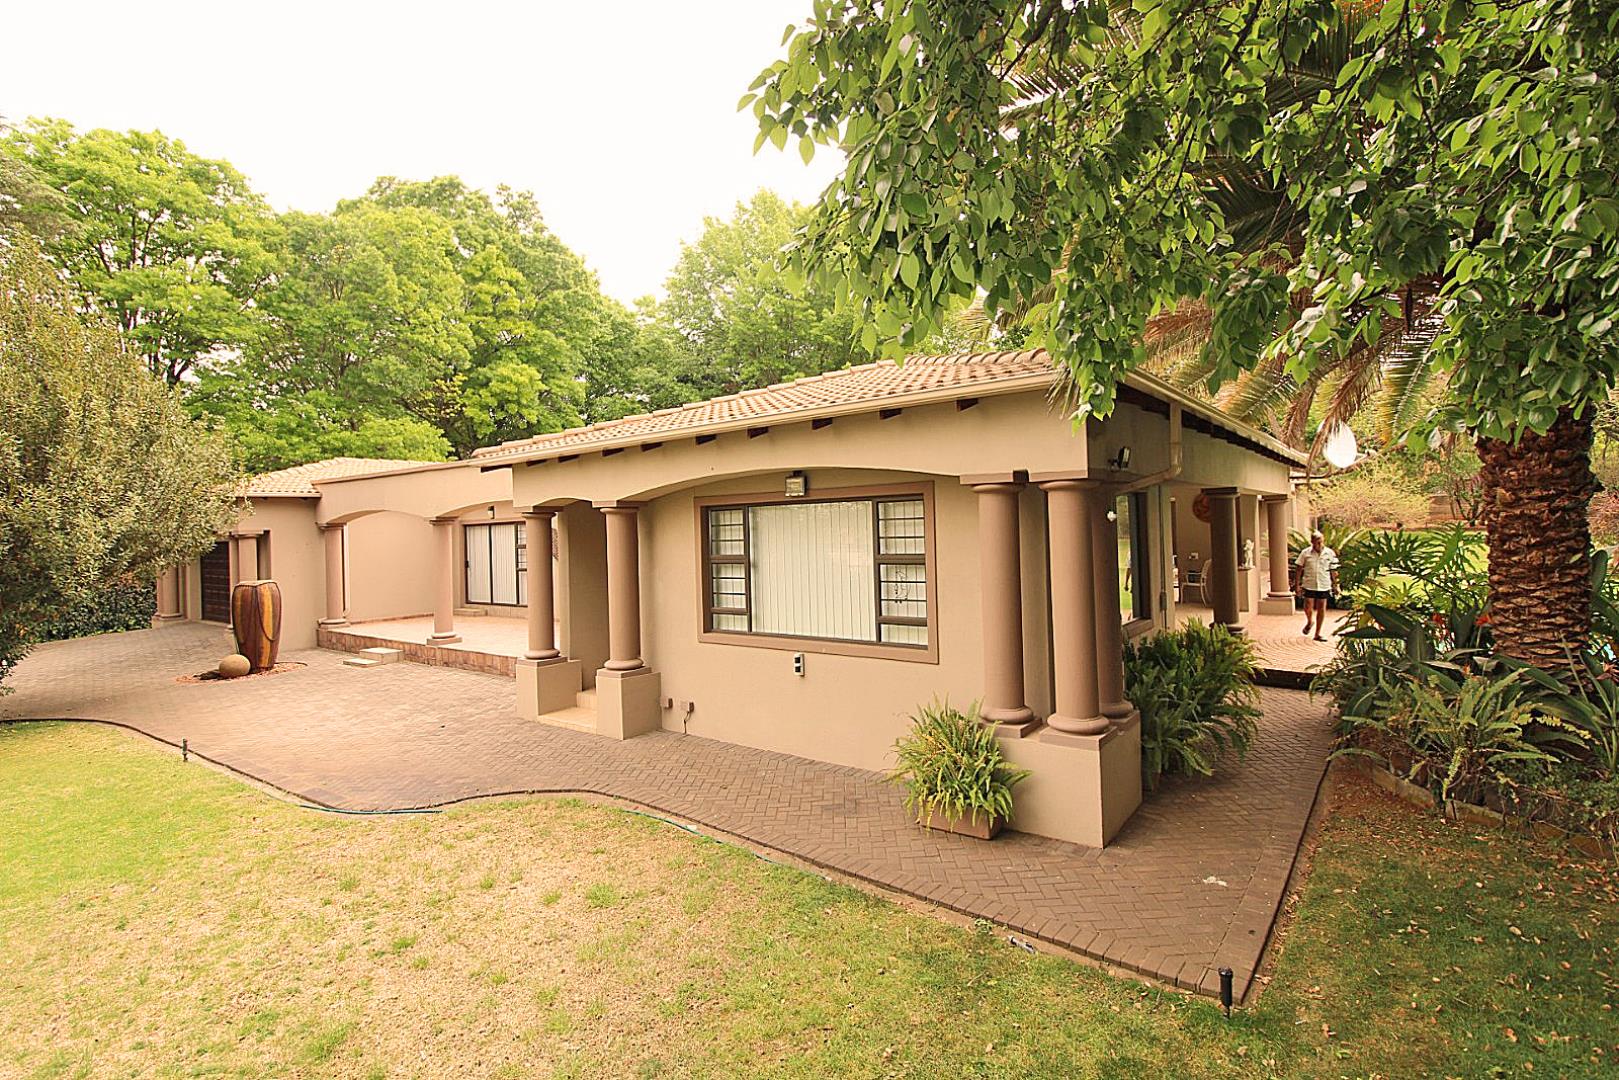 4 Bedroom  House for Sale in Vereeniging - Gauteng